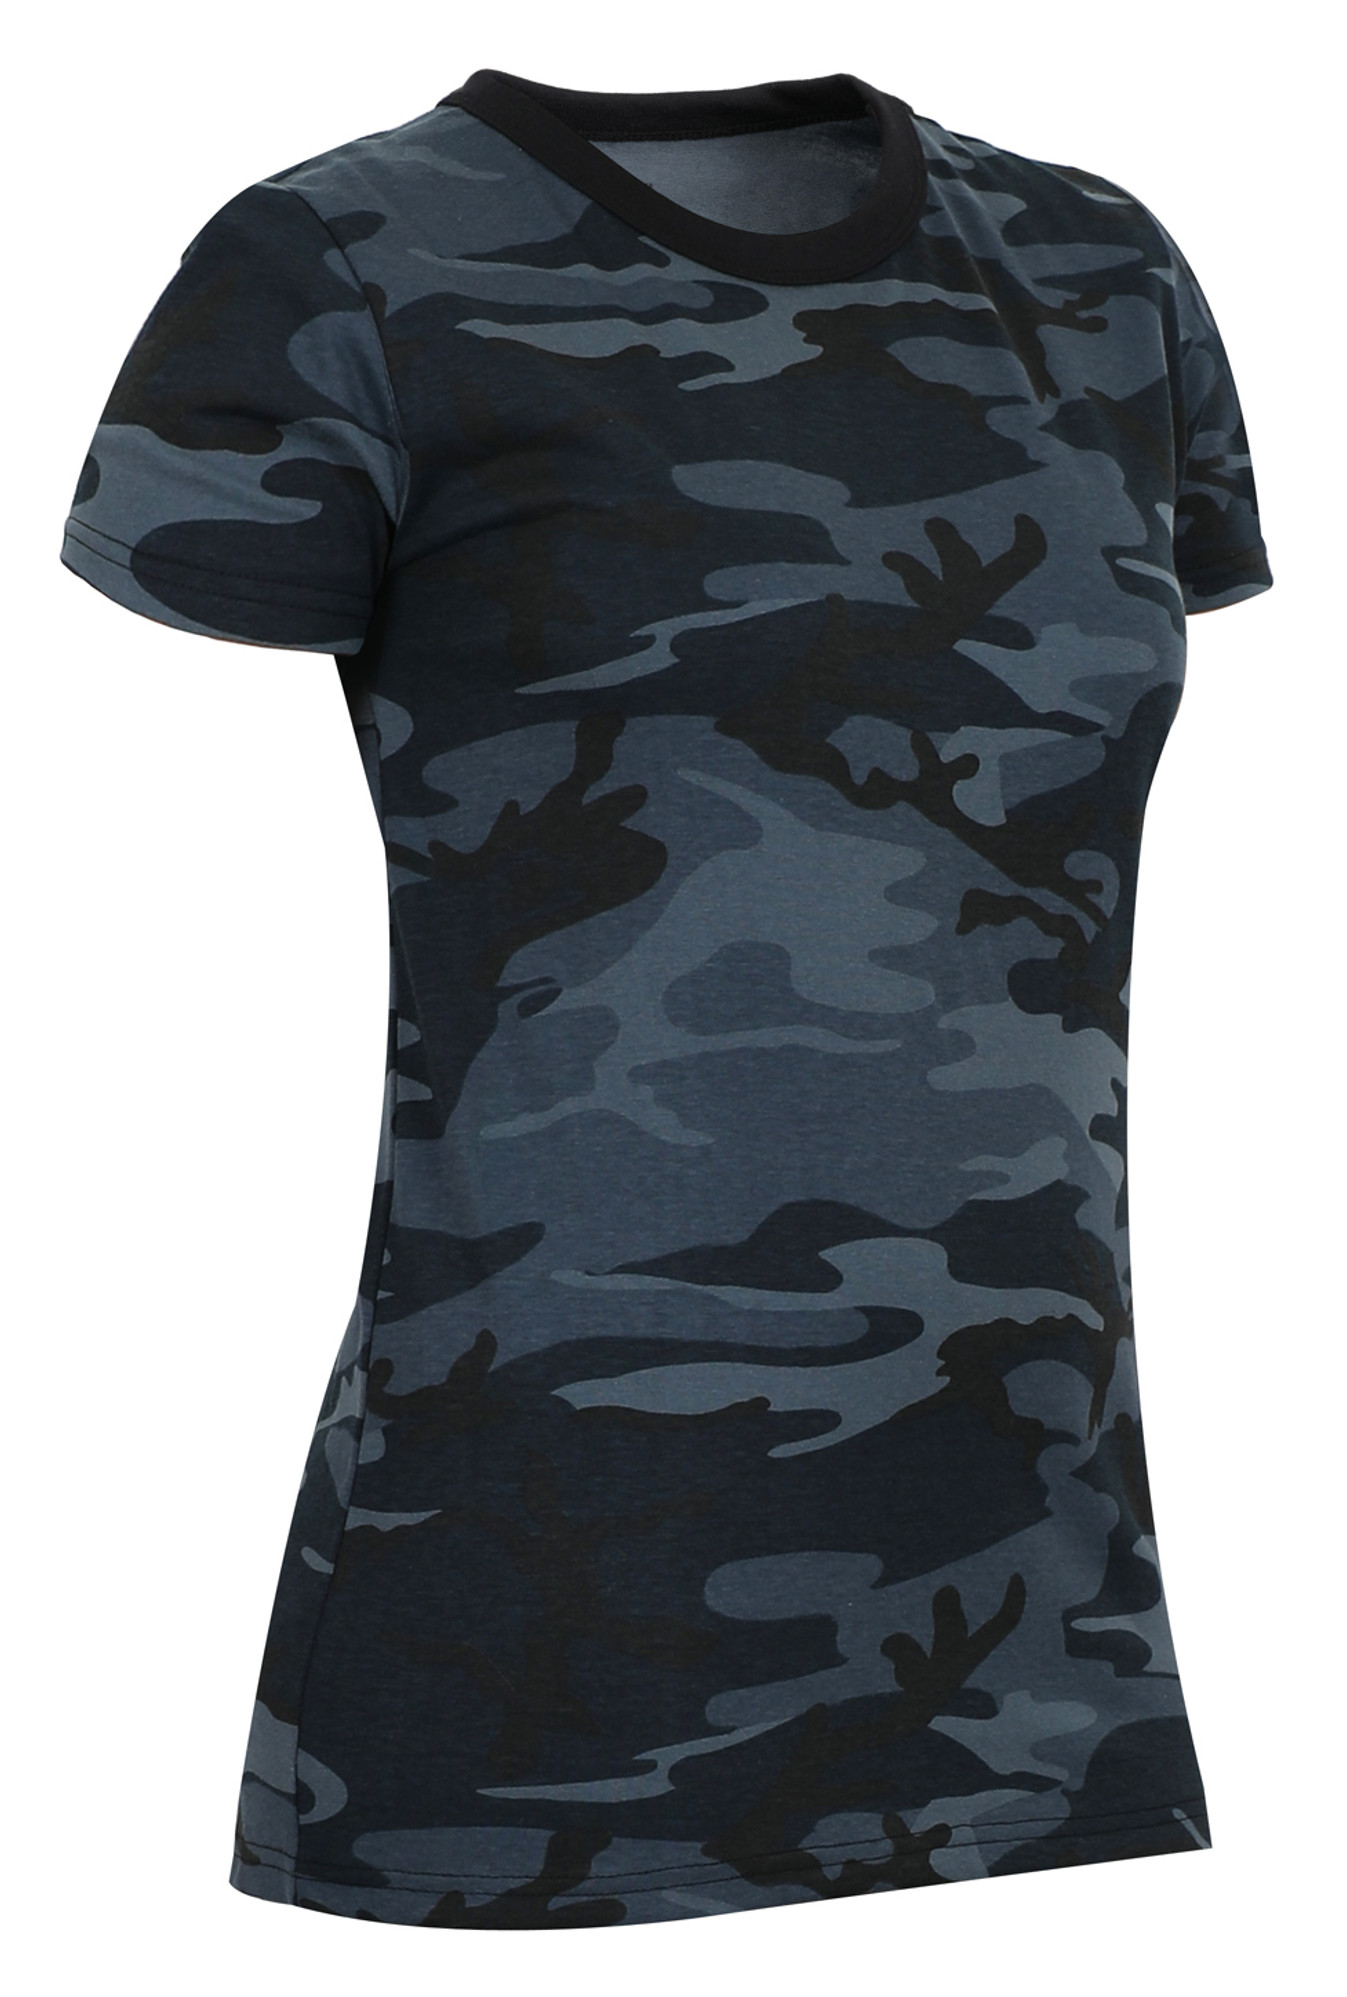 Rothco Womens Long Length Camo T-Shirt - Midnight Blue Camo